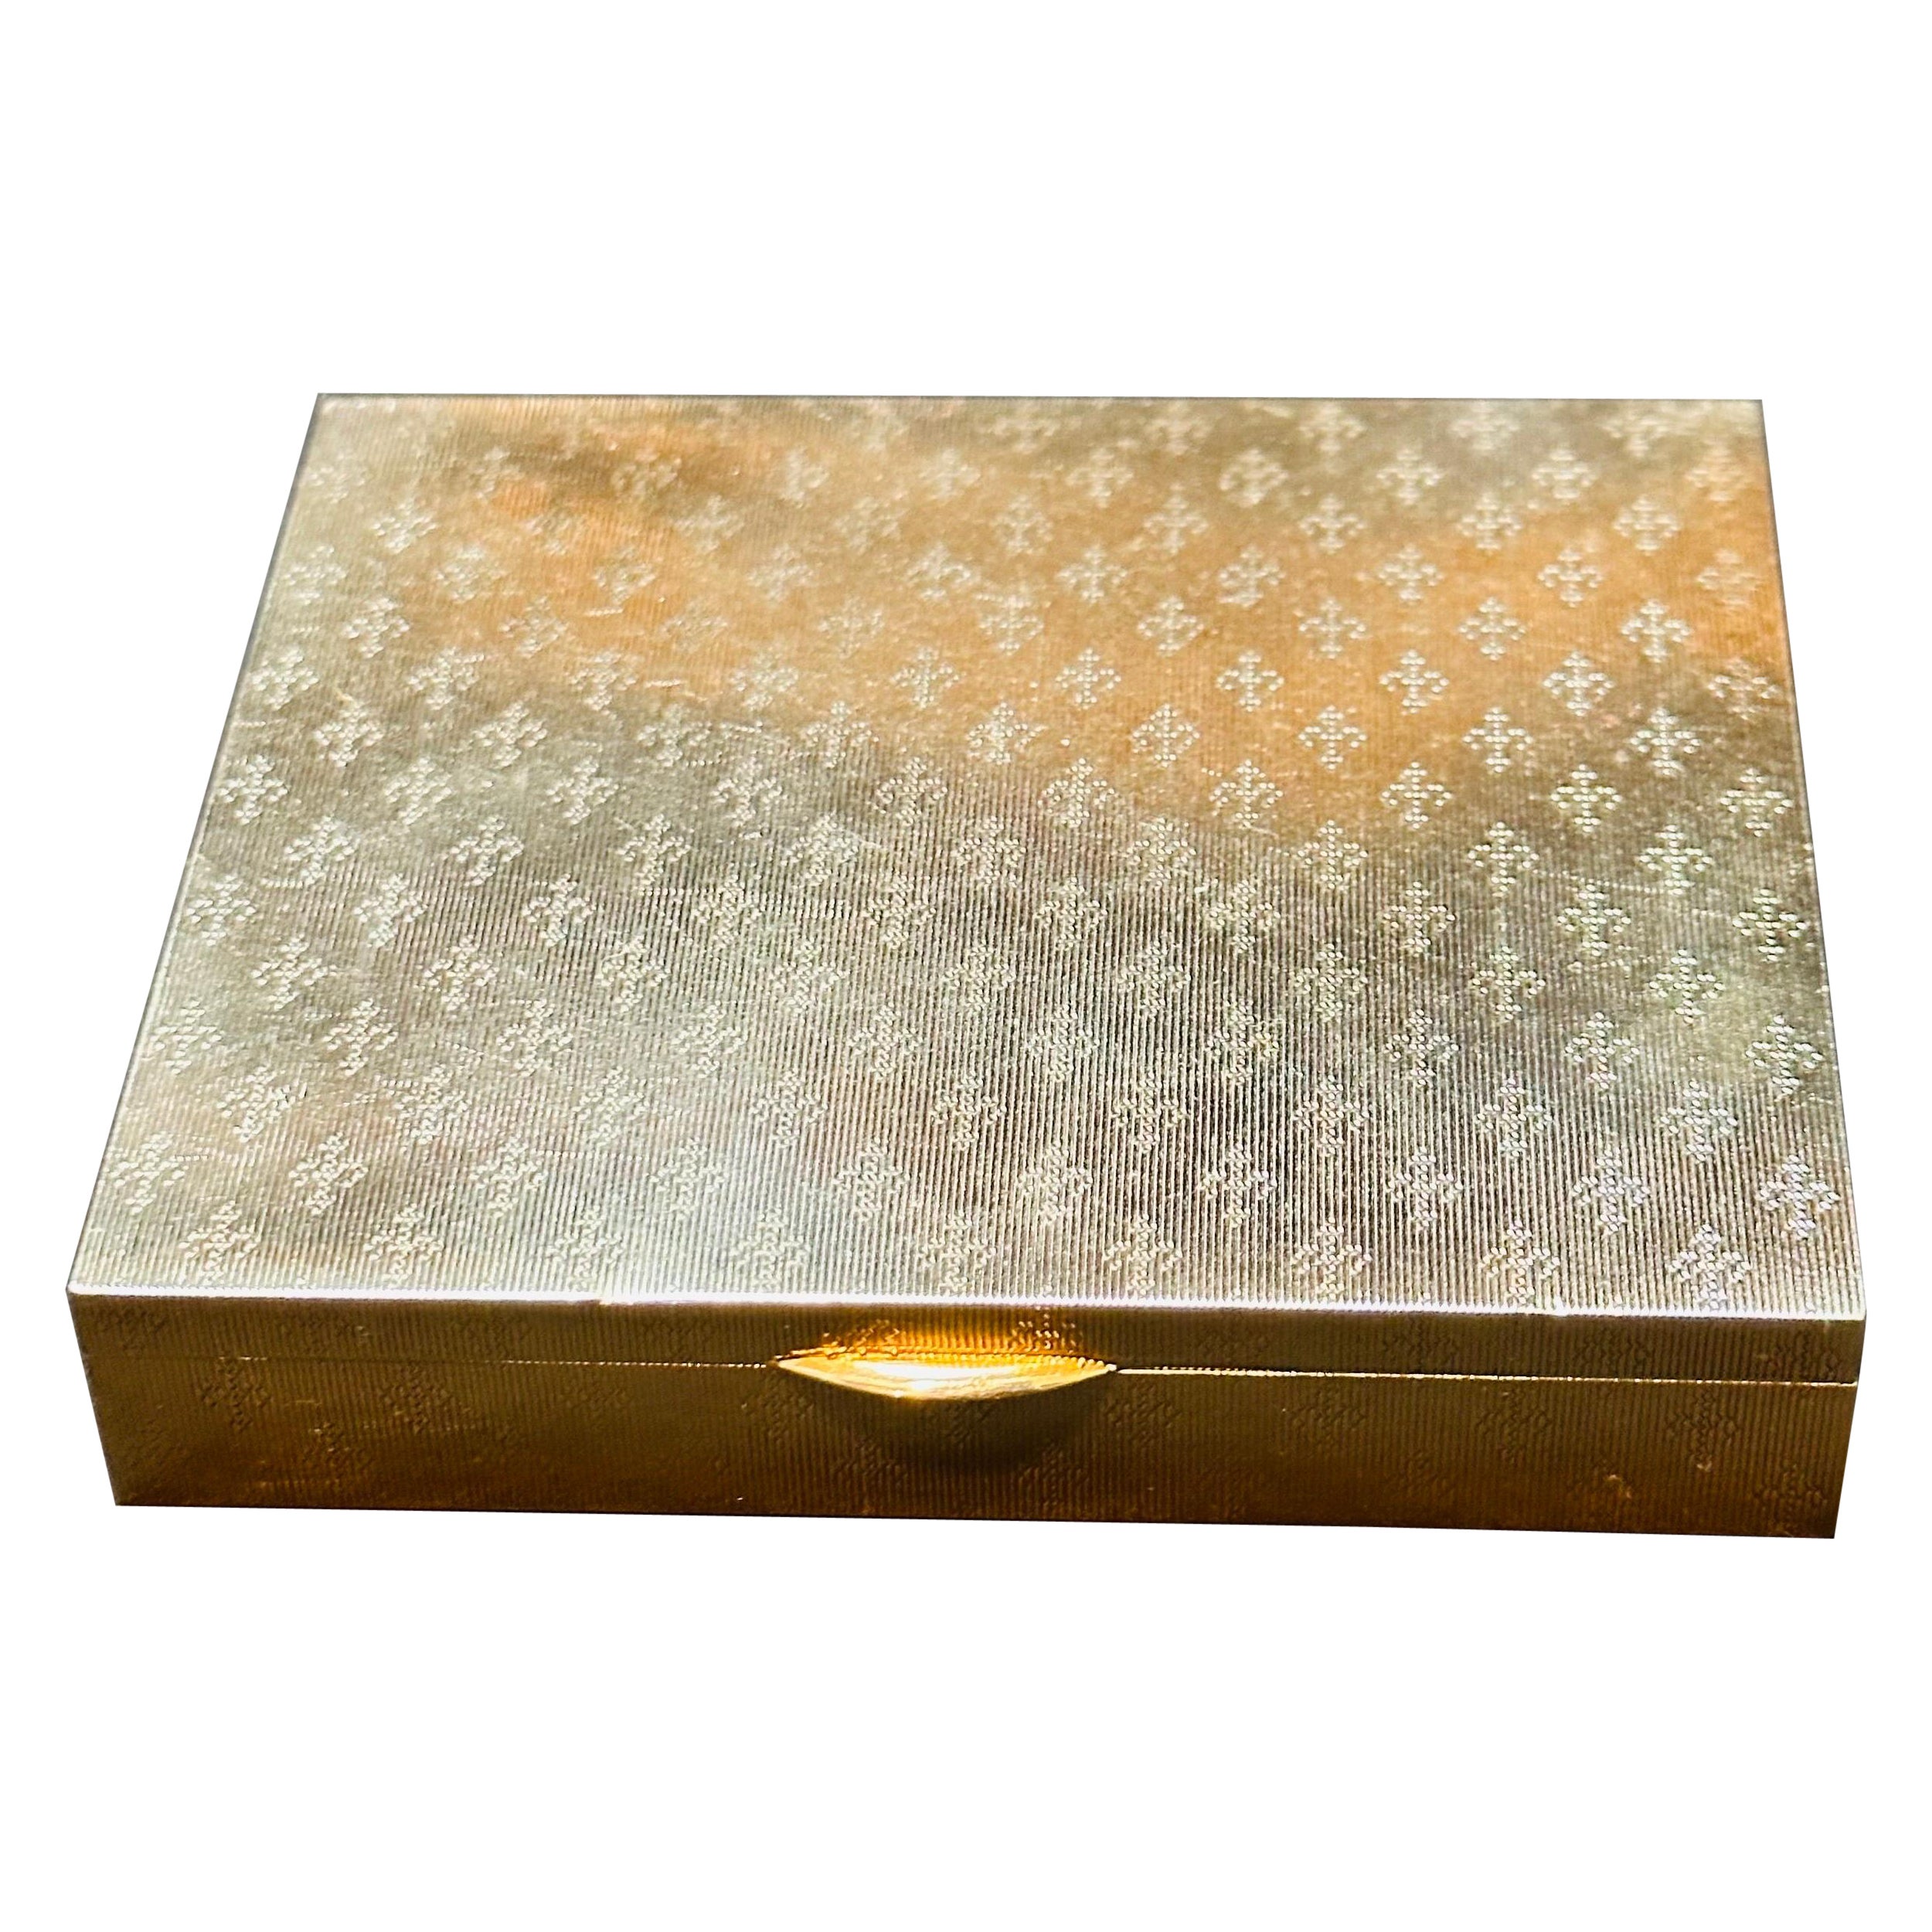 Cartier, boîte à poudre compacte en or 14 carats pour maquillage, 114 g